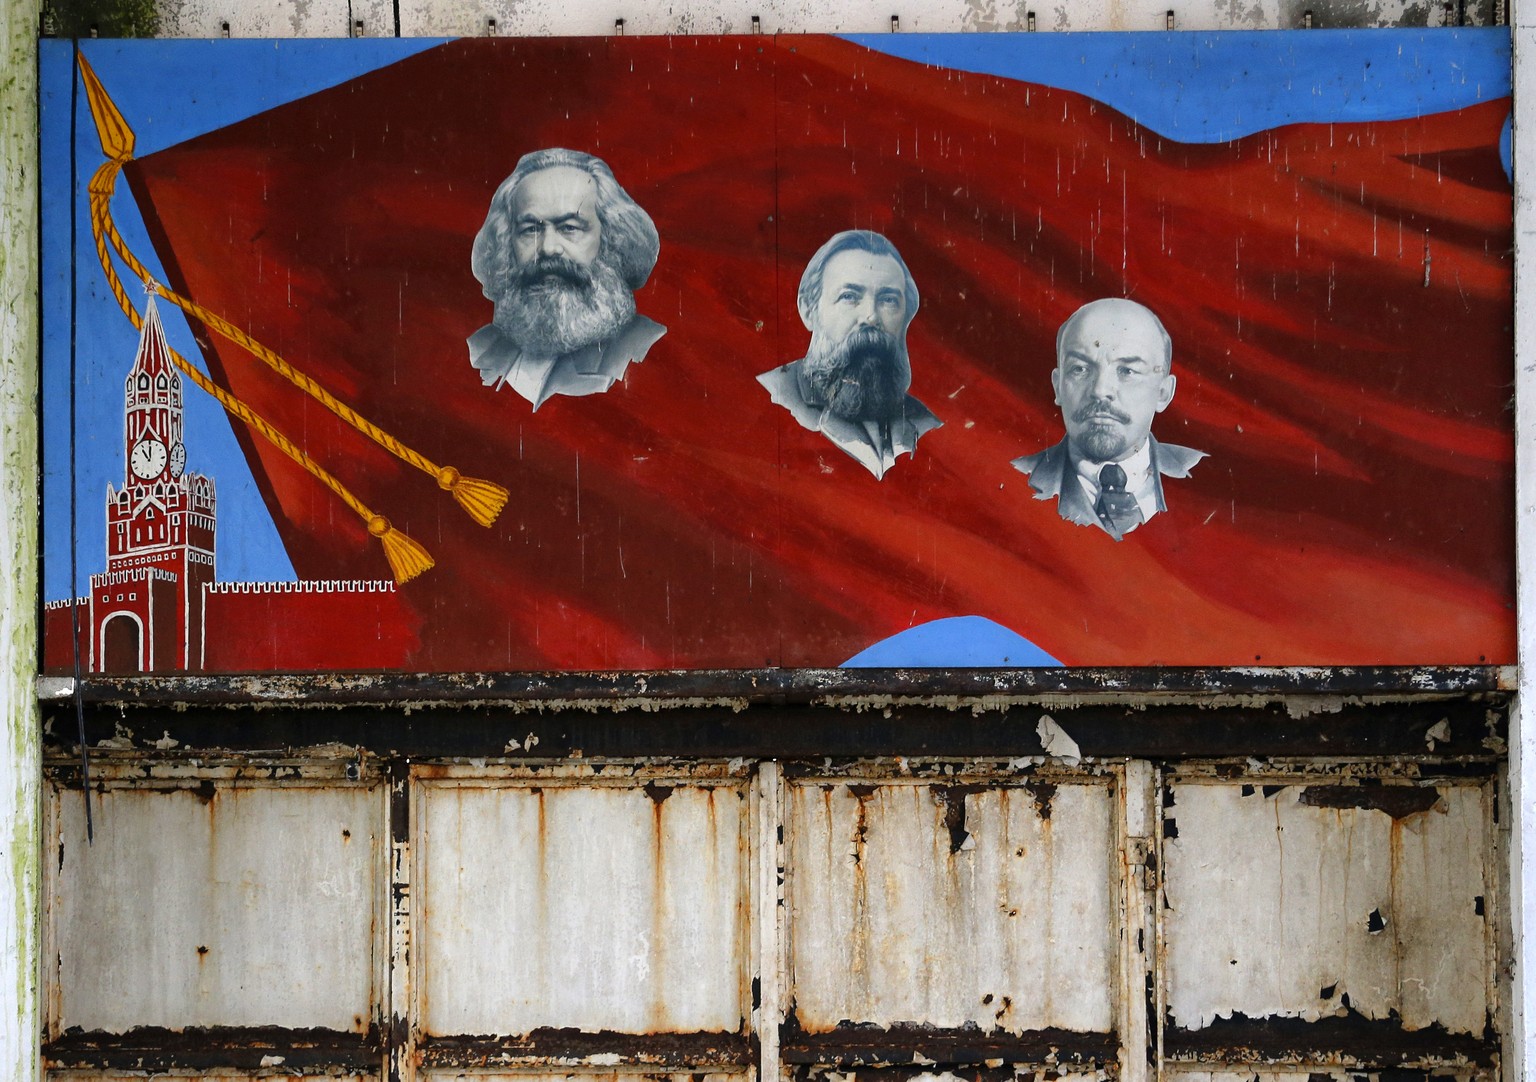 Zeugnis einer gescheiterten Ideologie: Wandbild mit Marx, Engels und Lenin in einer ehemaligen sowjetischen Militärbasis in Ungarn.